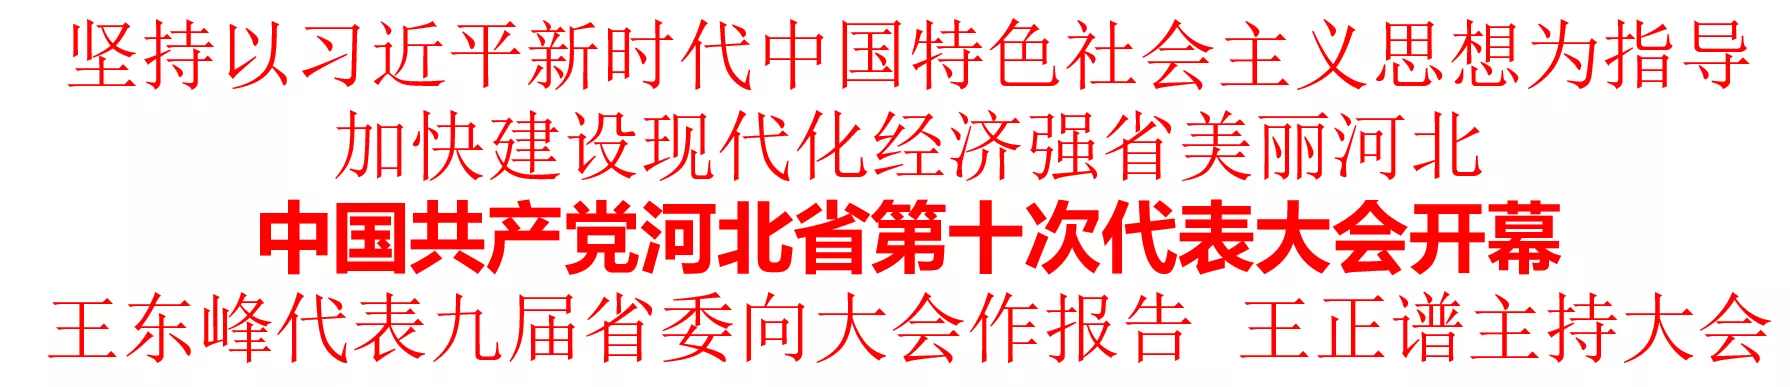 中国共产党河北省第十次代表大会开幕